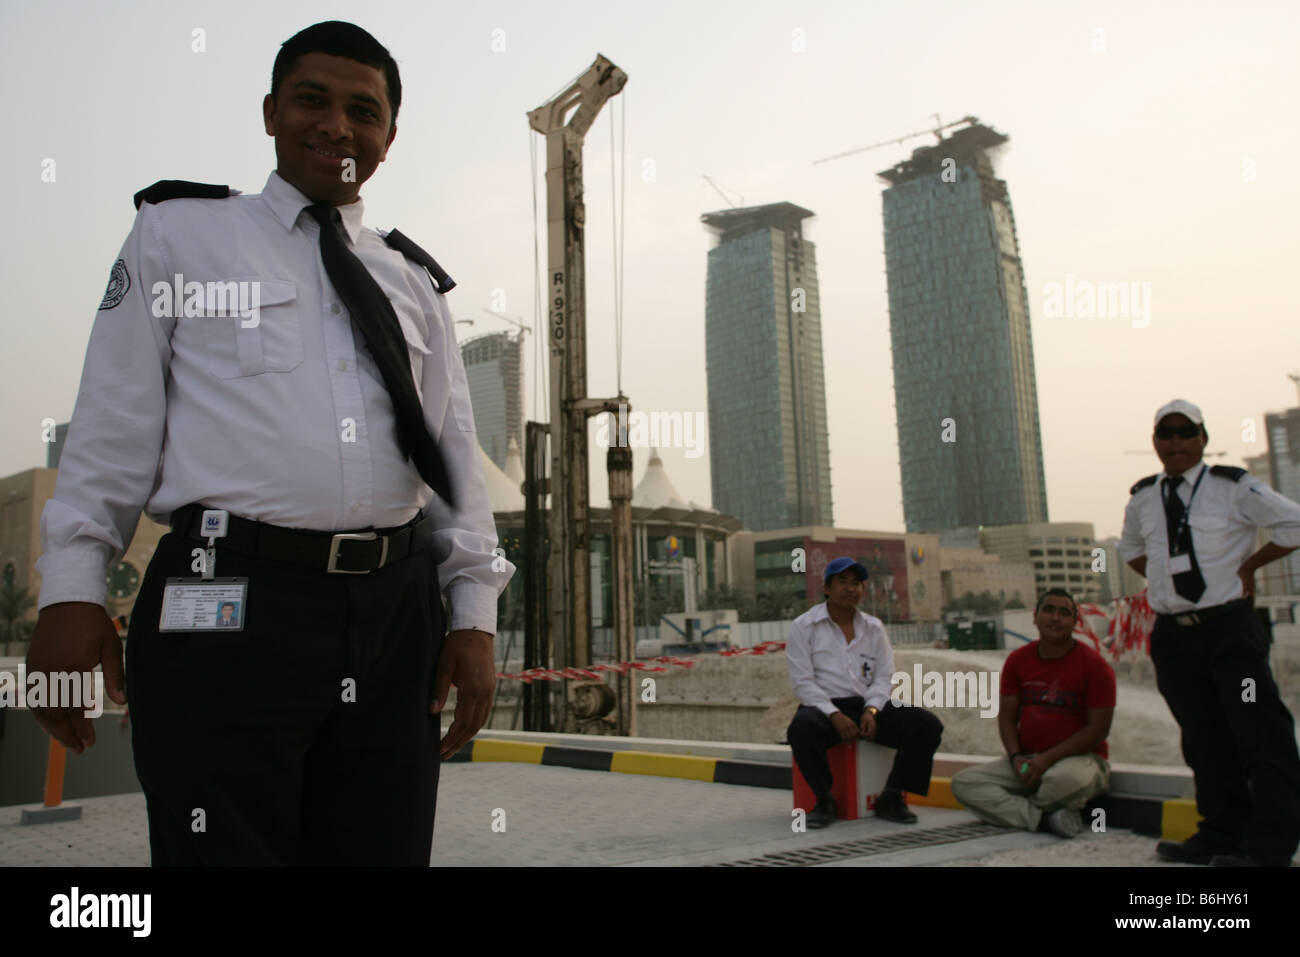 Gli immigrati lavorano come guardie di sicurezza nel centro di Doha, in Qatar. Foto Stock